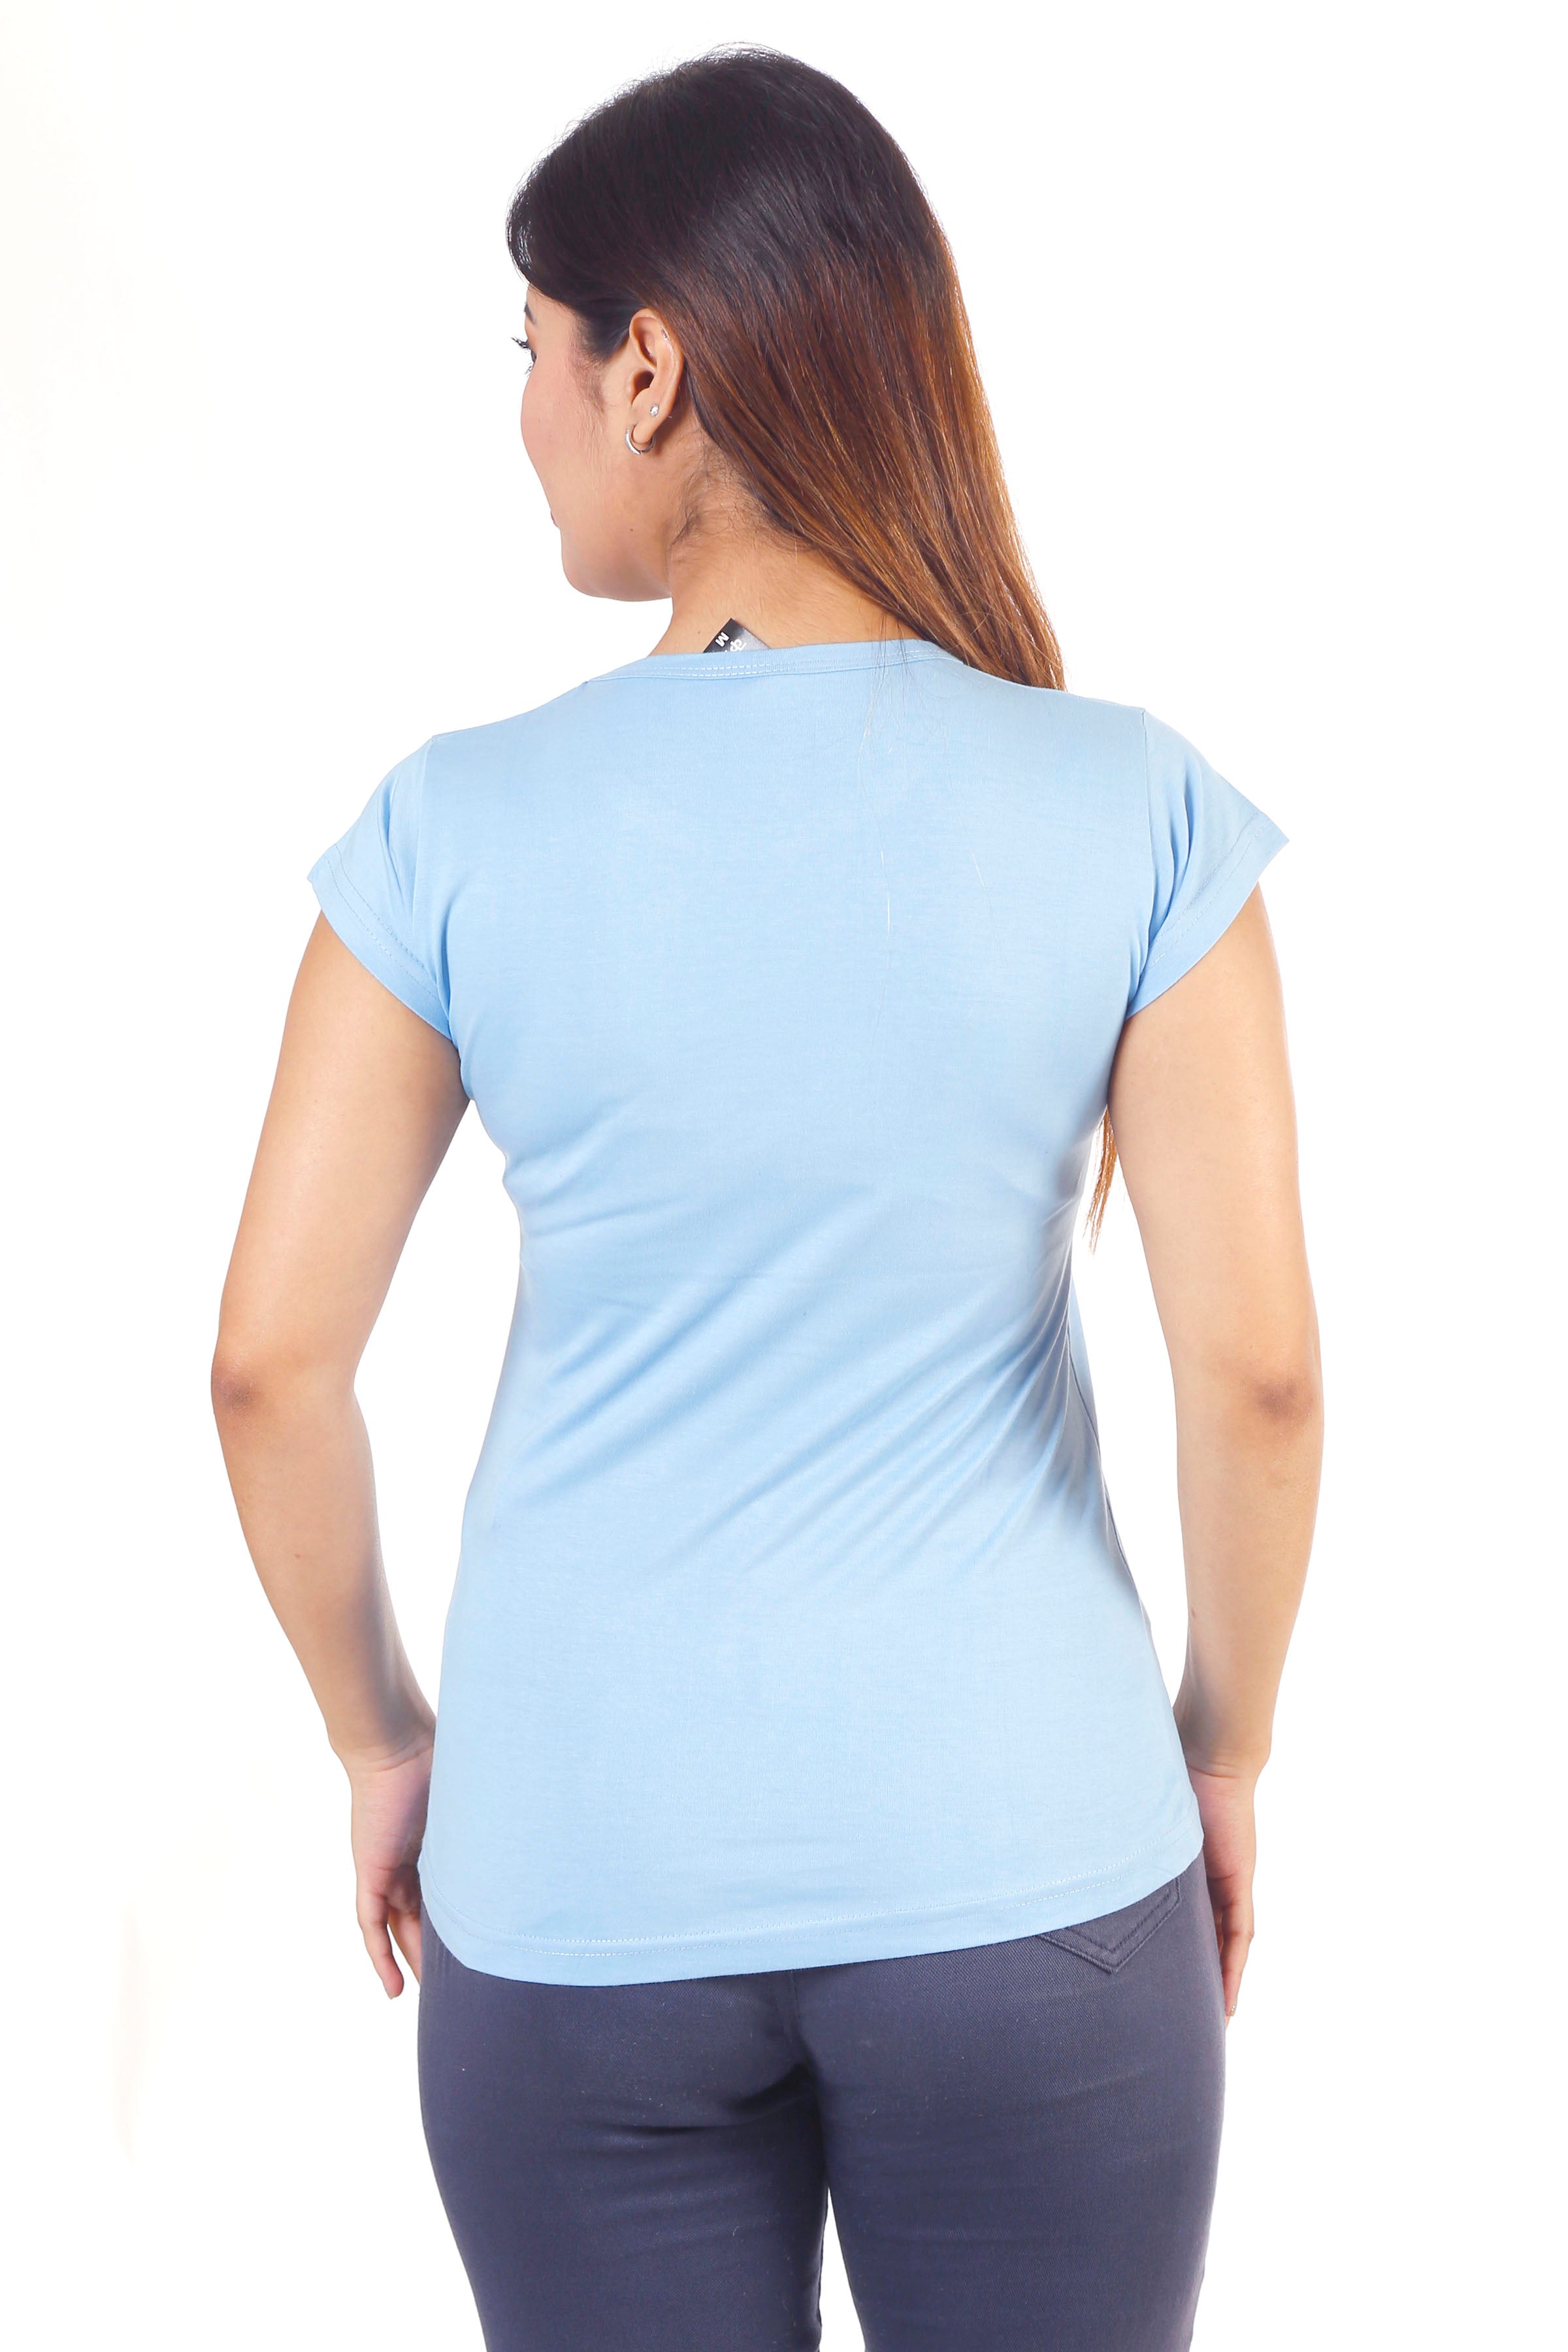 Women Round Neck Light Blue Teach Inspire Cotton T-shirt